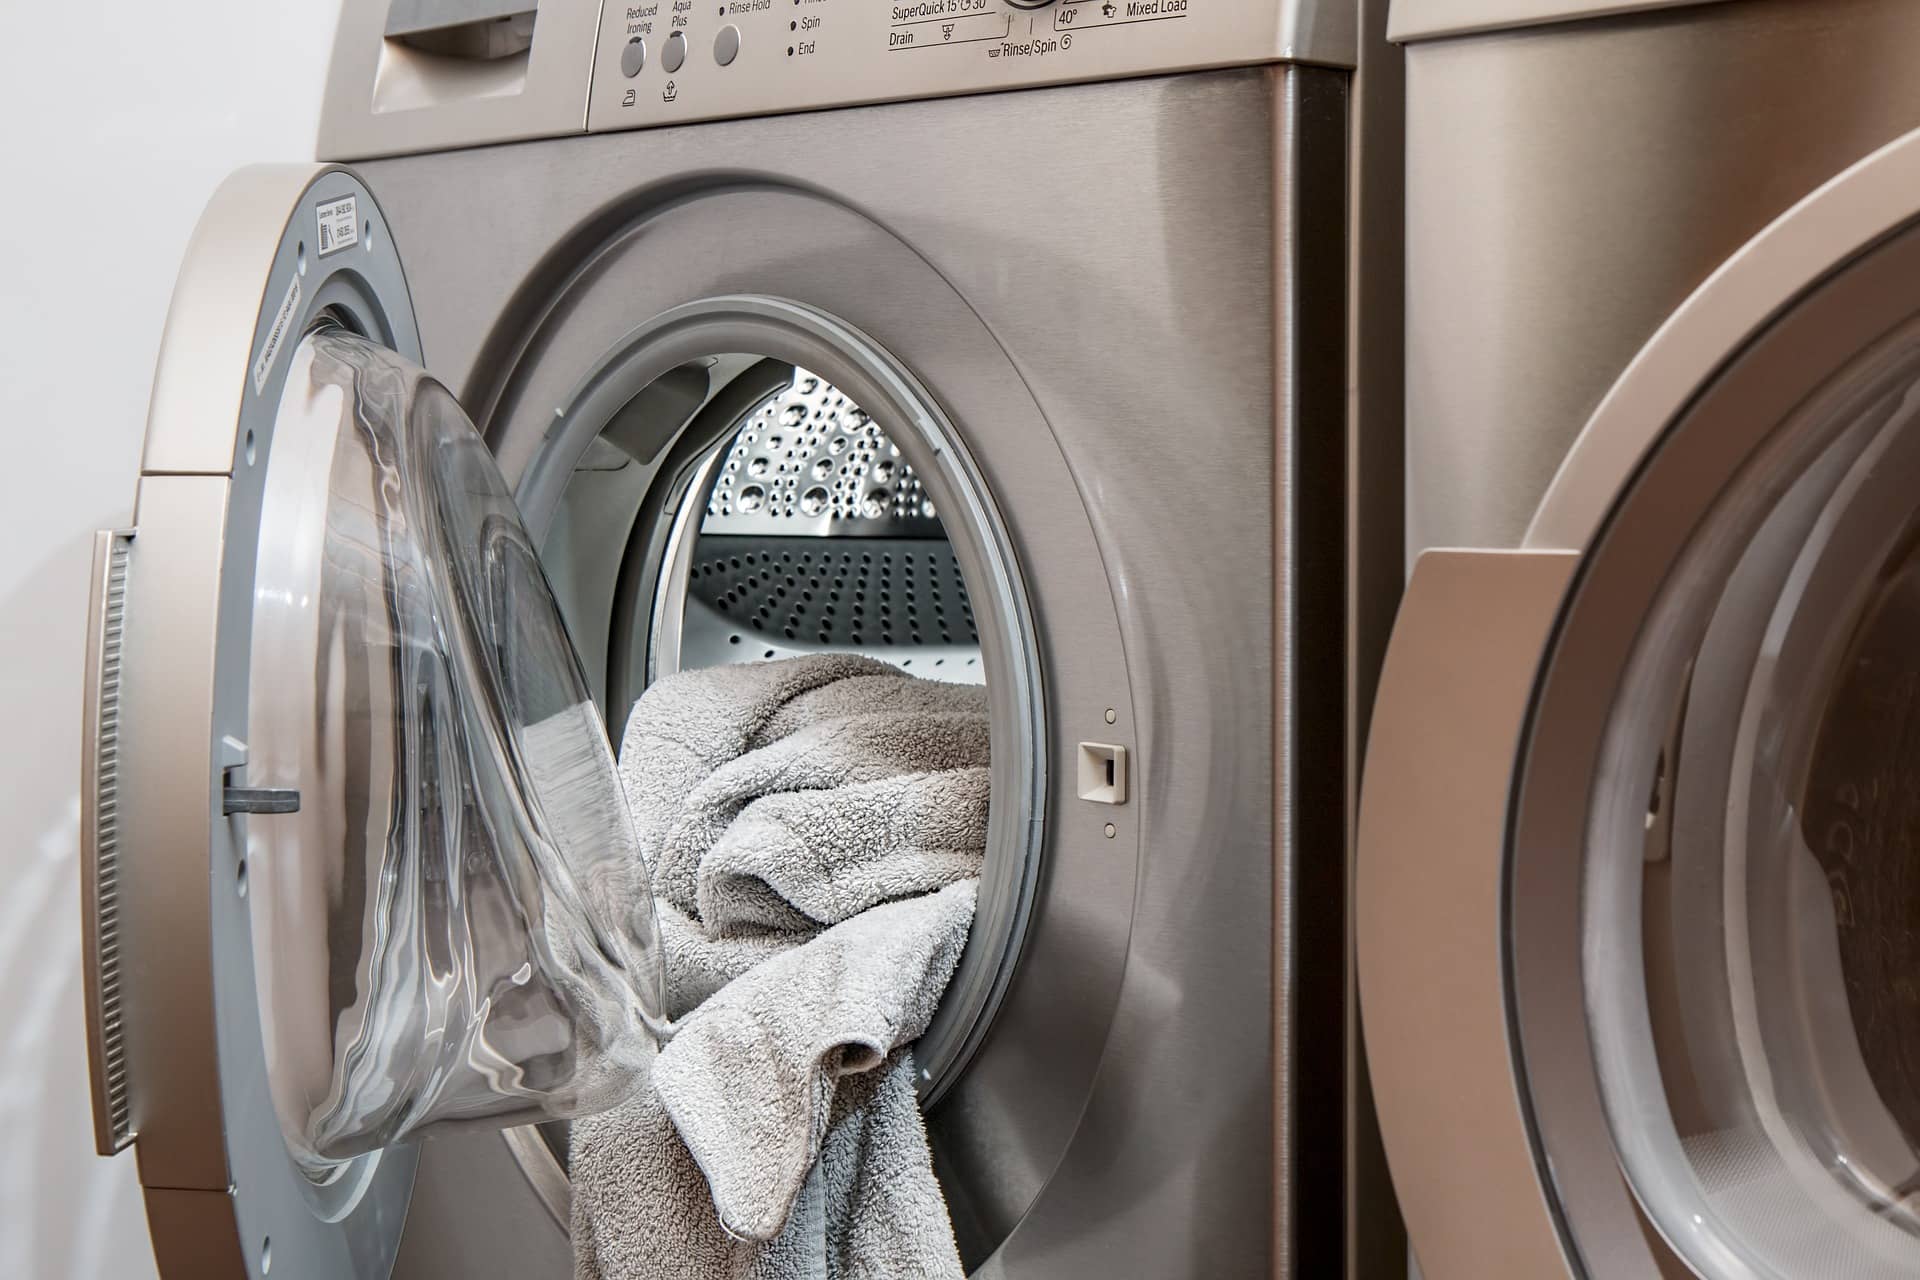 Quelle est la qualité de fabrication d'une machine à laver